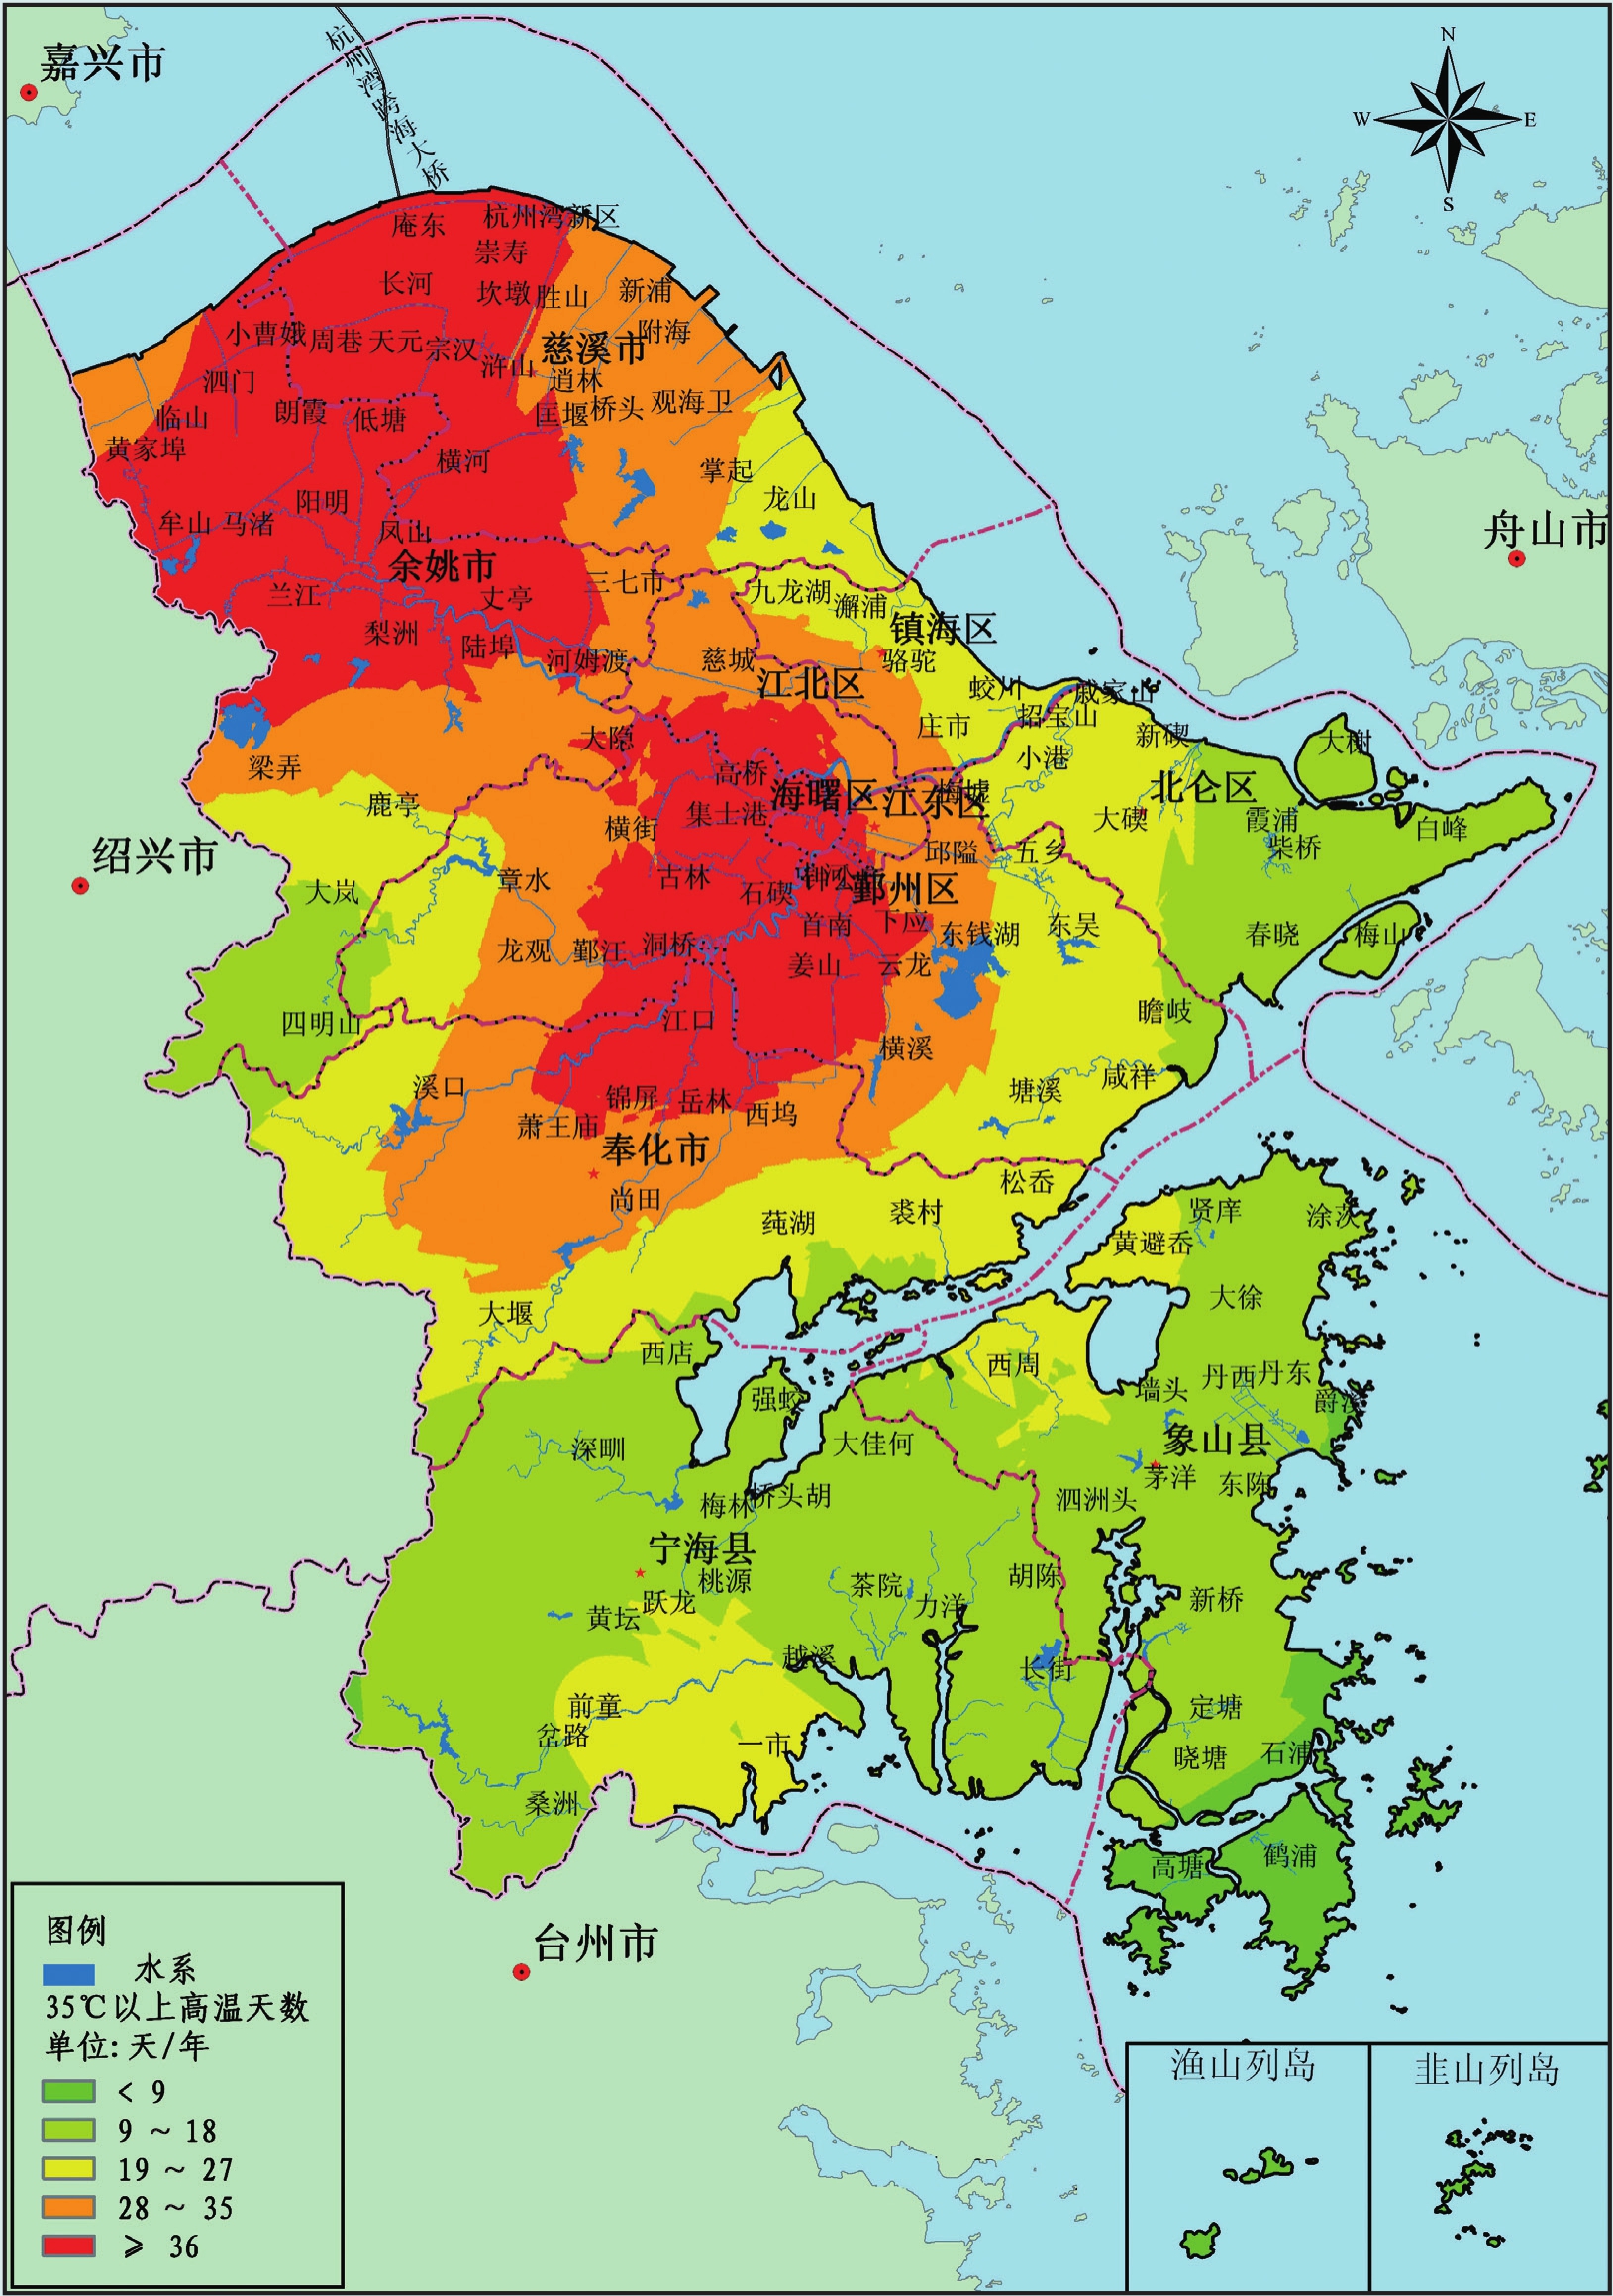 宁波市地图各区县划分图片